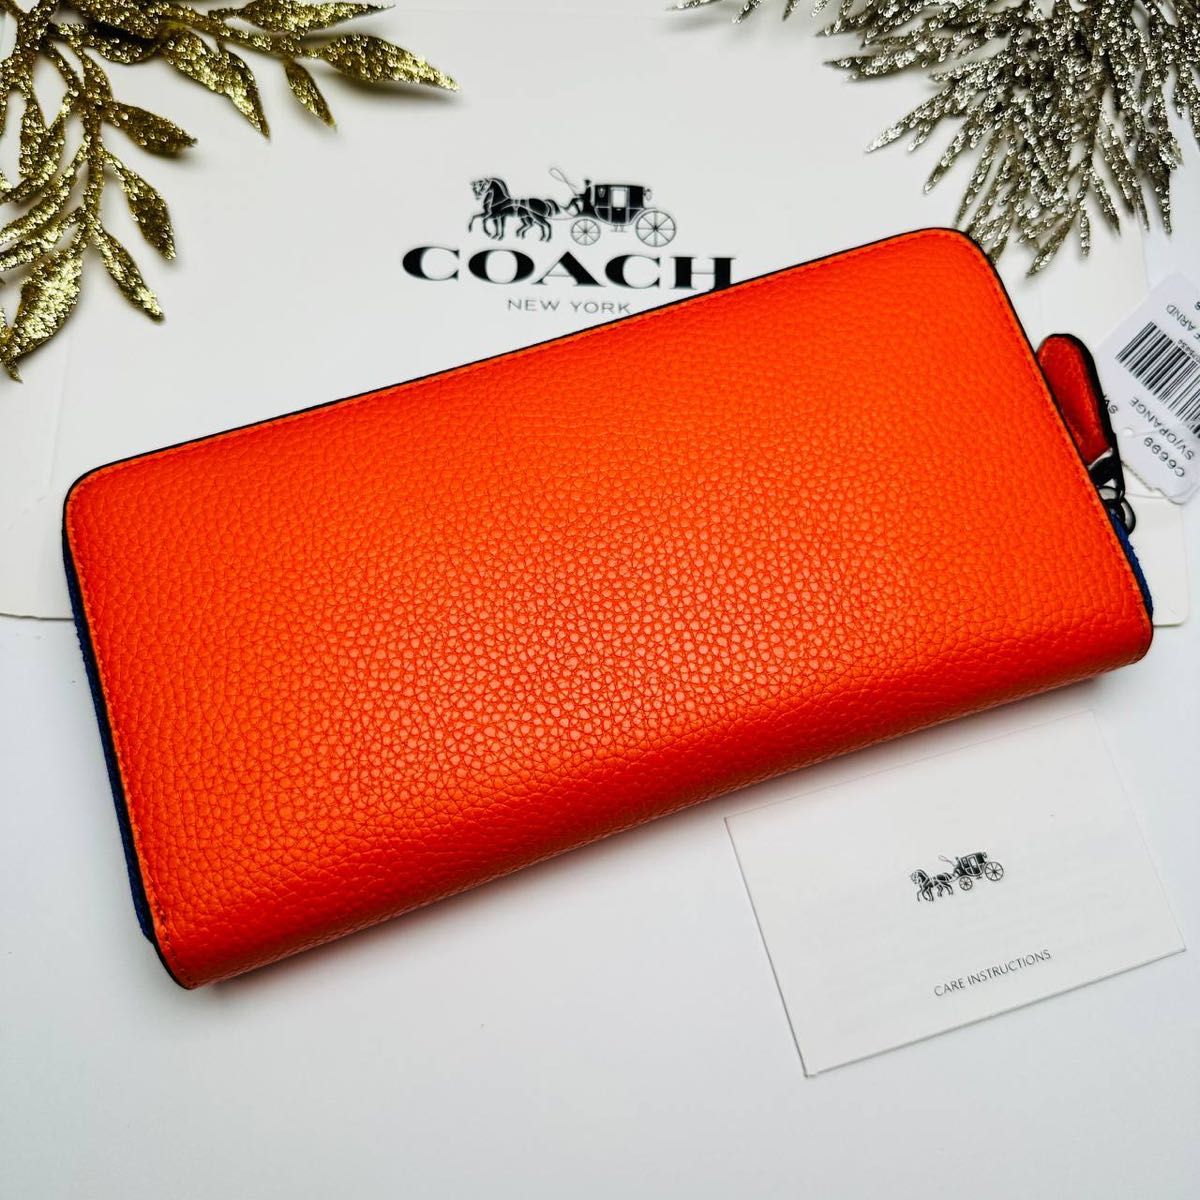 返品無料です COACHコーチ長財布 レディースのオレンジ色 - 小物